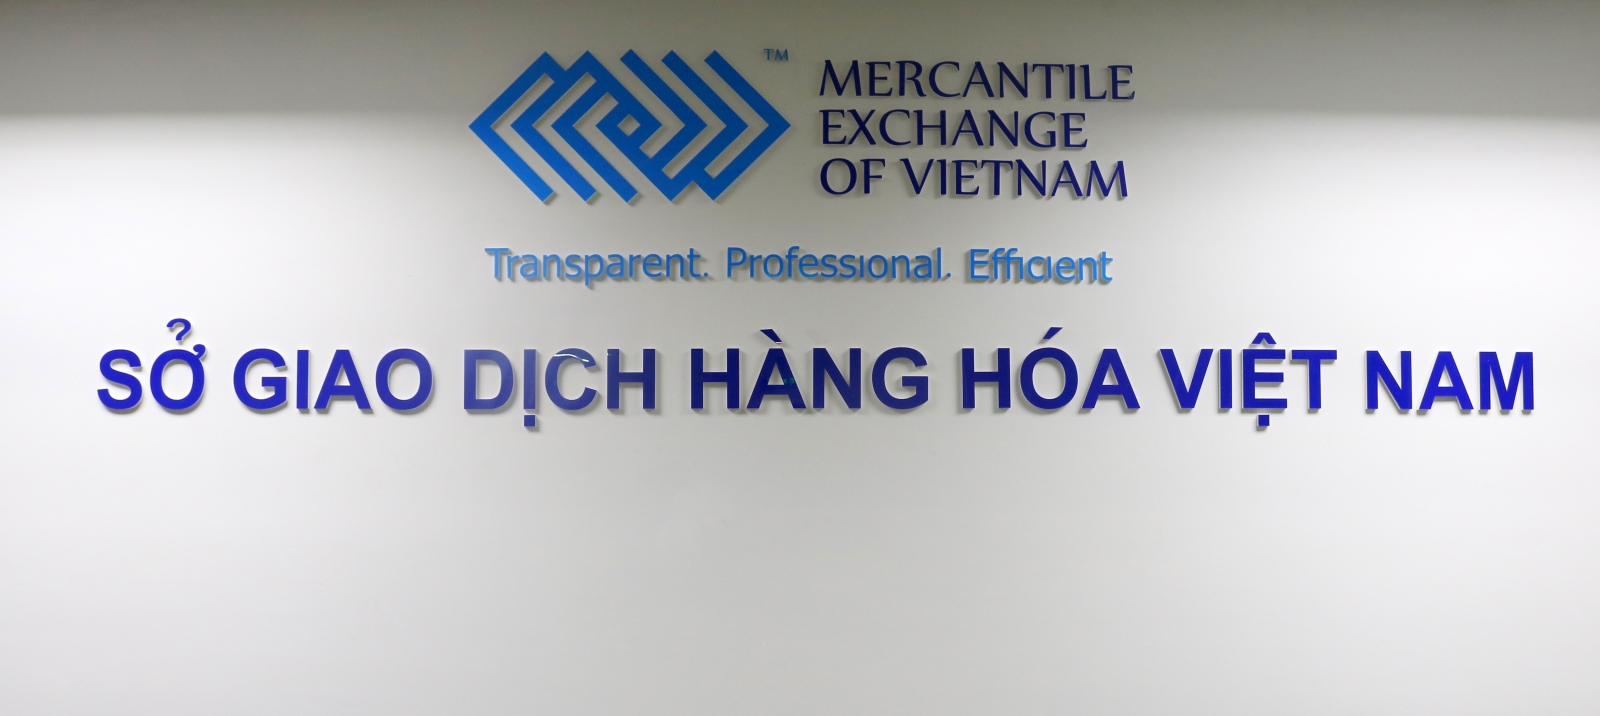 Sở Giao dịch Hàng hoá Việt Nam thông báo Tập huấn Thành viên về phần mềm giao dịch M-System